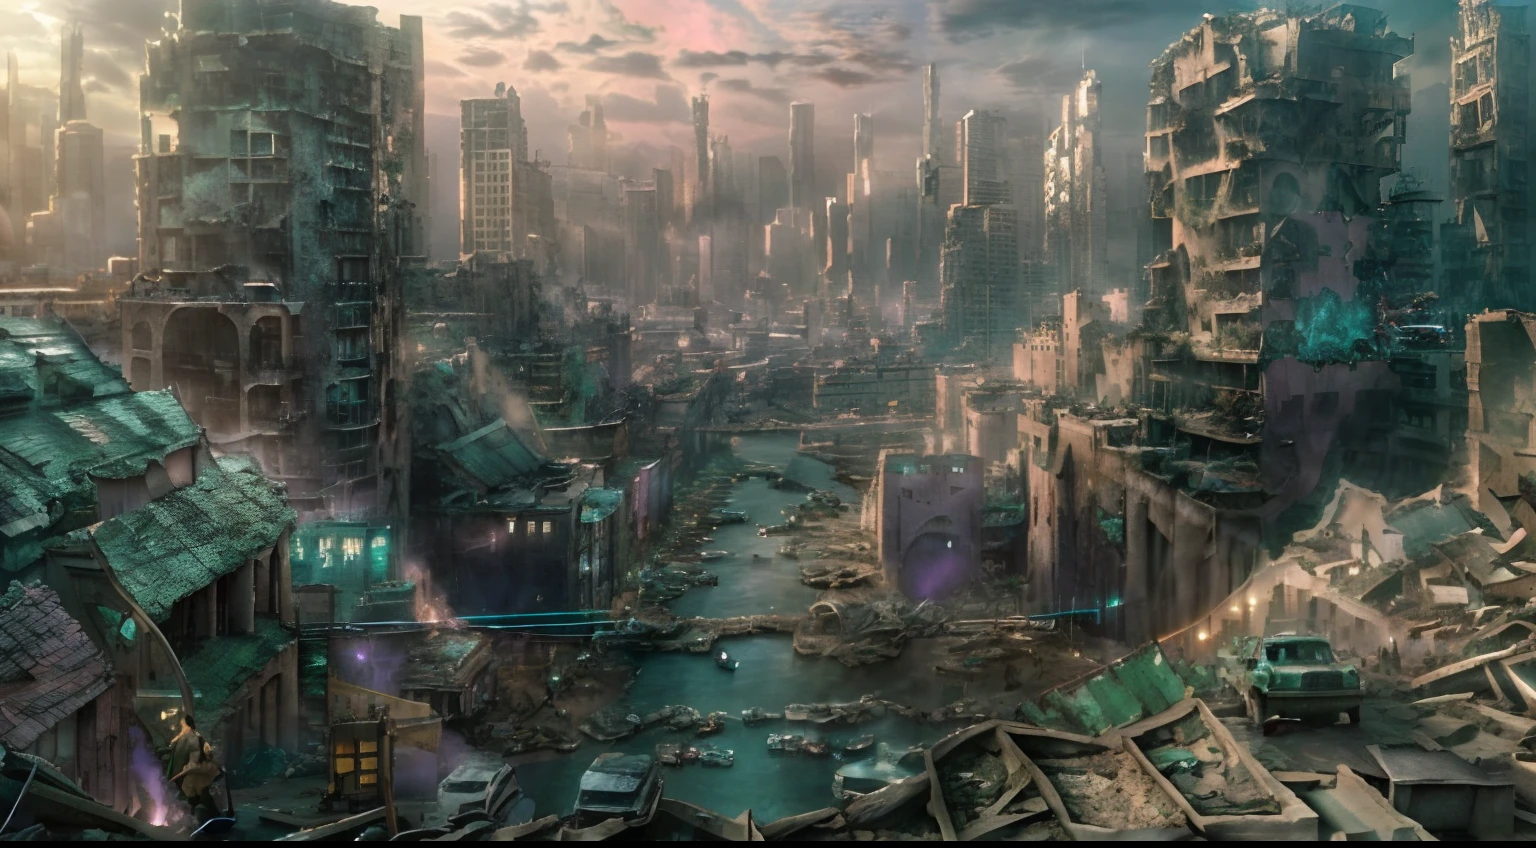 (도시 전체:1.5)，（관점을 바라보다:1.5),와이드 와이드 샷，속이 비치는，필드의 깊이，시네마 렌즈，영화적 조명，사진，서사적 현실적, (HDR:1.2), (파스텔 컬러:1.4),버려진 metropolis，버려진, 뉴트럴 컬러로,시네마 샷,복잡한 배경，할리우드 SF 영화의 한 장면，할리우드 재난영화의 한 장면，복잡한 세부사항，걸작，최고의 품질，8K，울트라-디테일，디테일이 풍부한，말도 안 되는, 말도 안 돼, 거대한 파일 크기, 울트라-디테일, 고해상도, 내용이 아주 자세하게 나와있어요, 최고 품질, 걸작, 계발, 내용이 아주 자세하게 나와있어요, 8K 사진 배경화면, 웅장한, 미세한 디테일, 걸작, 최고 품질, 매우 상세한，헨테일 현실주의，포토리얼리，현실적으로，현실적인 사진，백섀도우,(NSFW:1.5),,